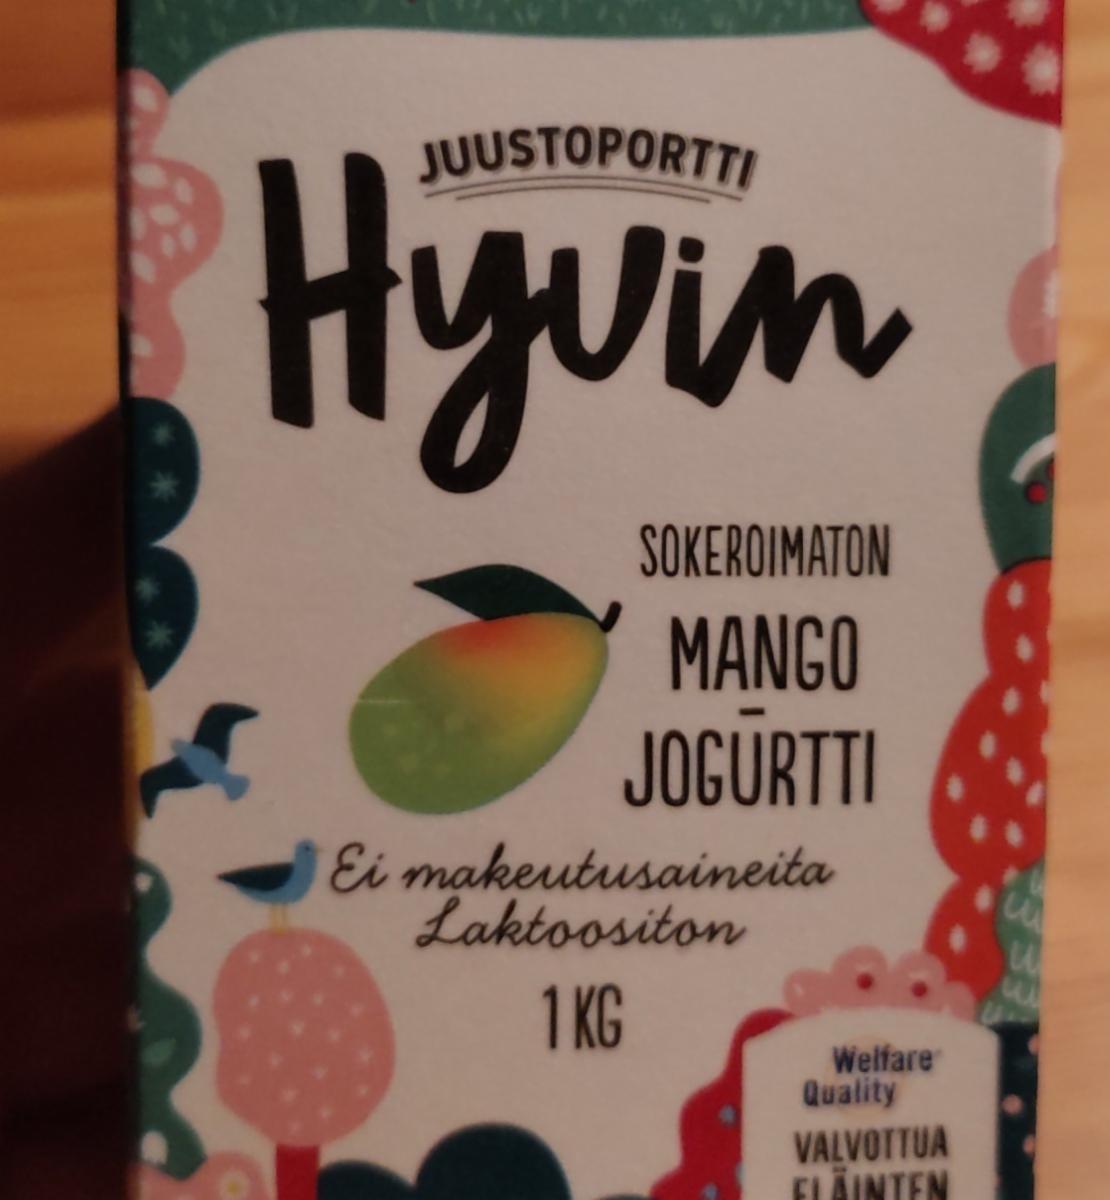 Fotografie - Hyvin mango sokeroimaton jogurtti Juustoportti